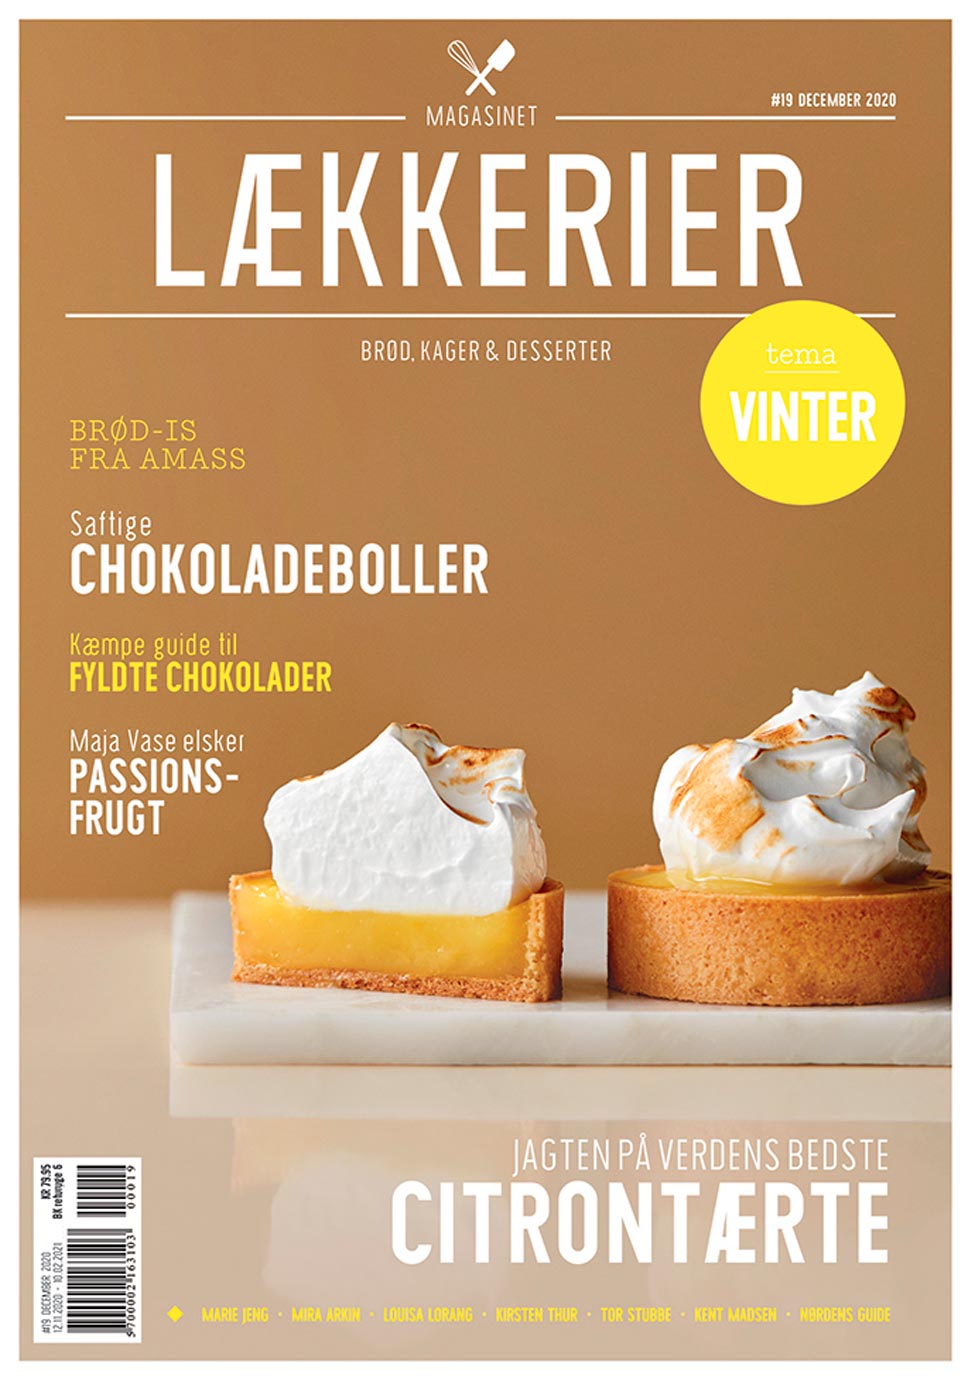 lækkerier-magasin-forside-19-hvid-kant